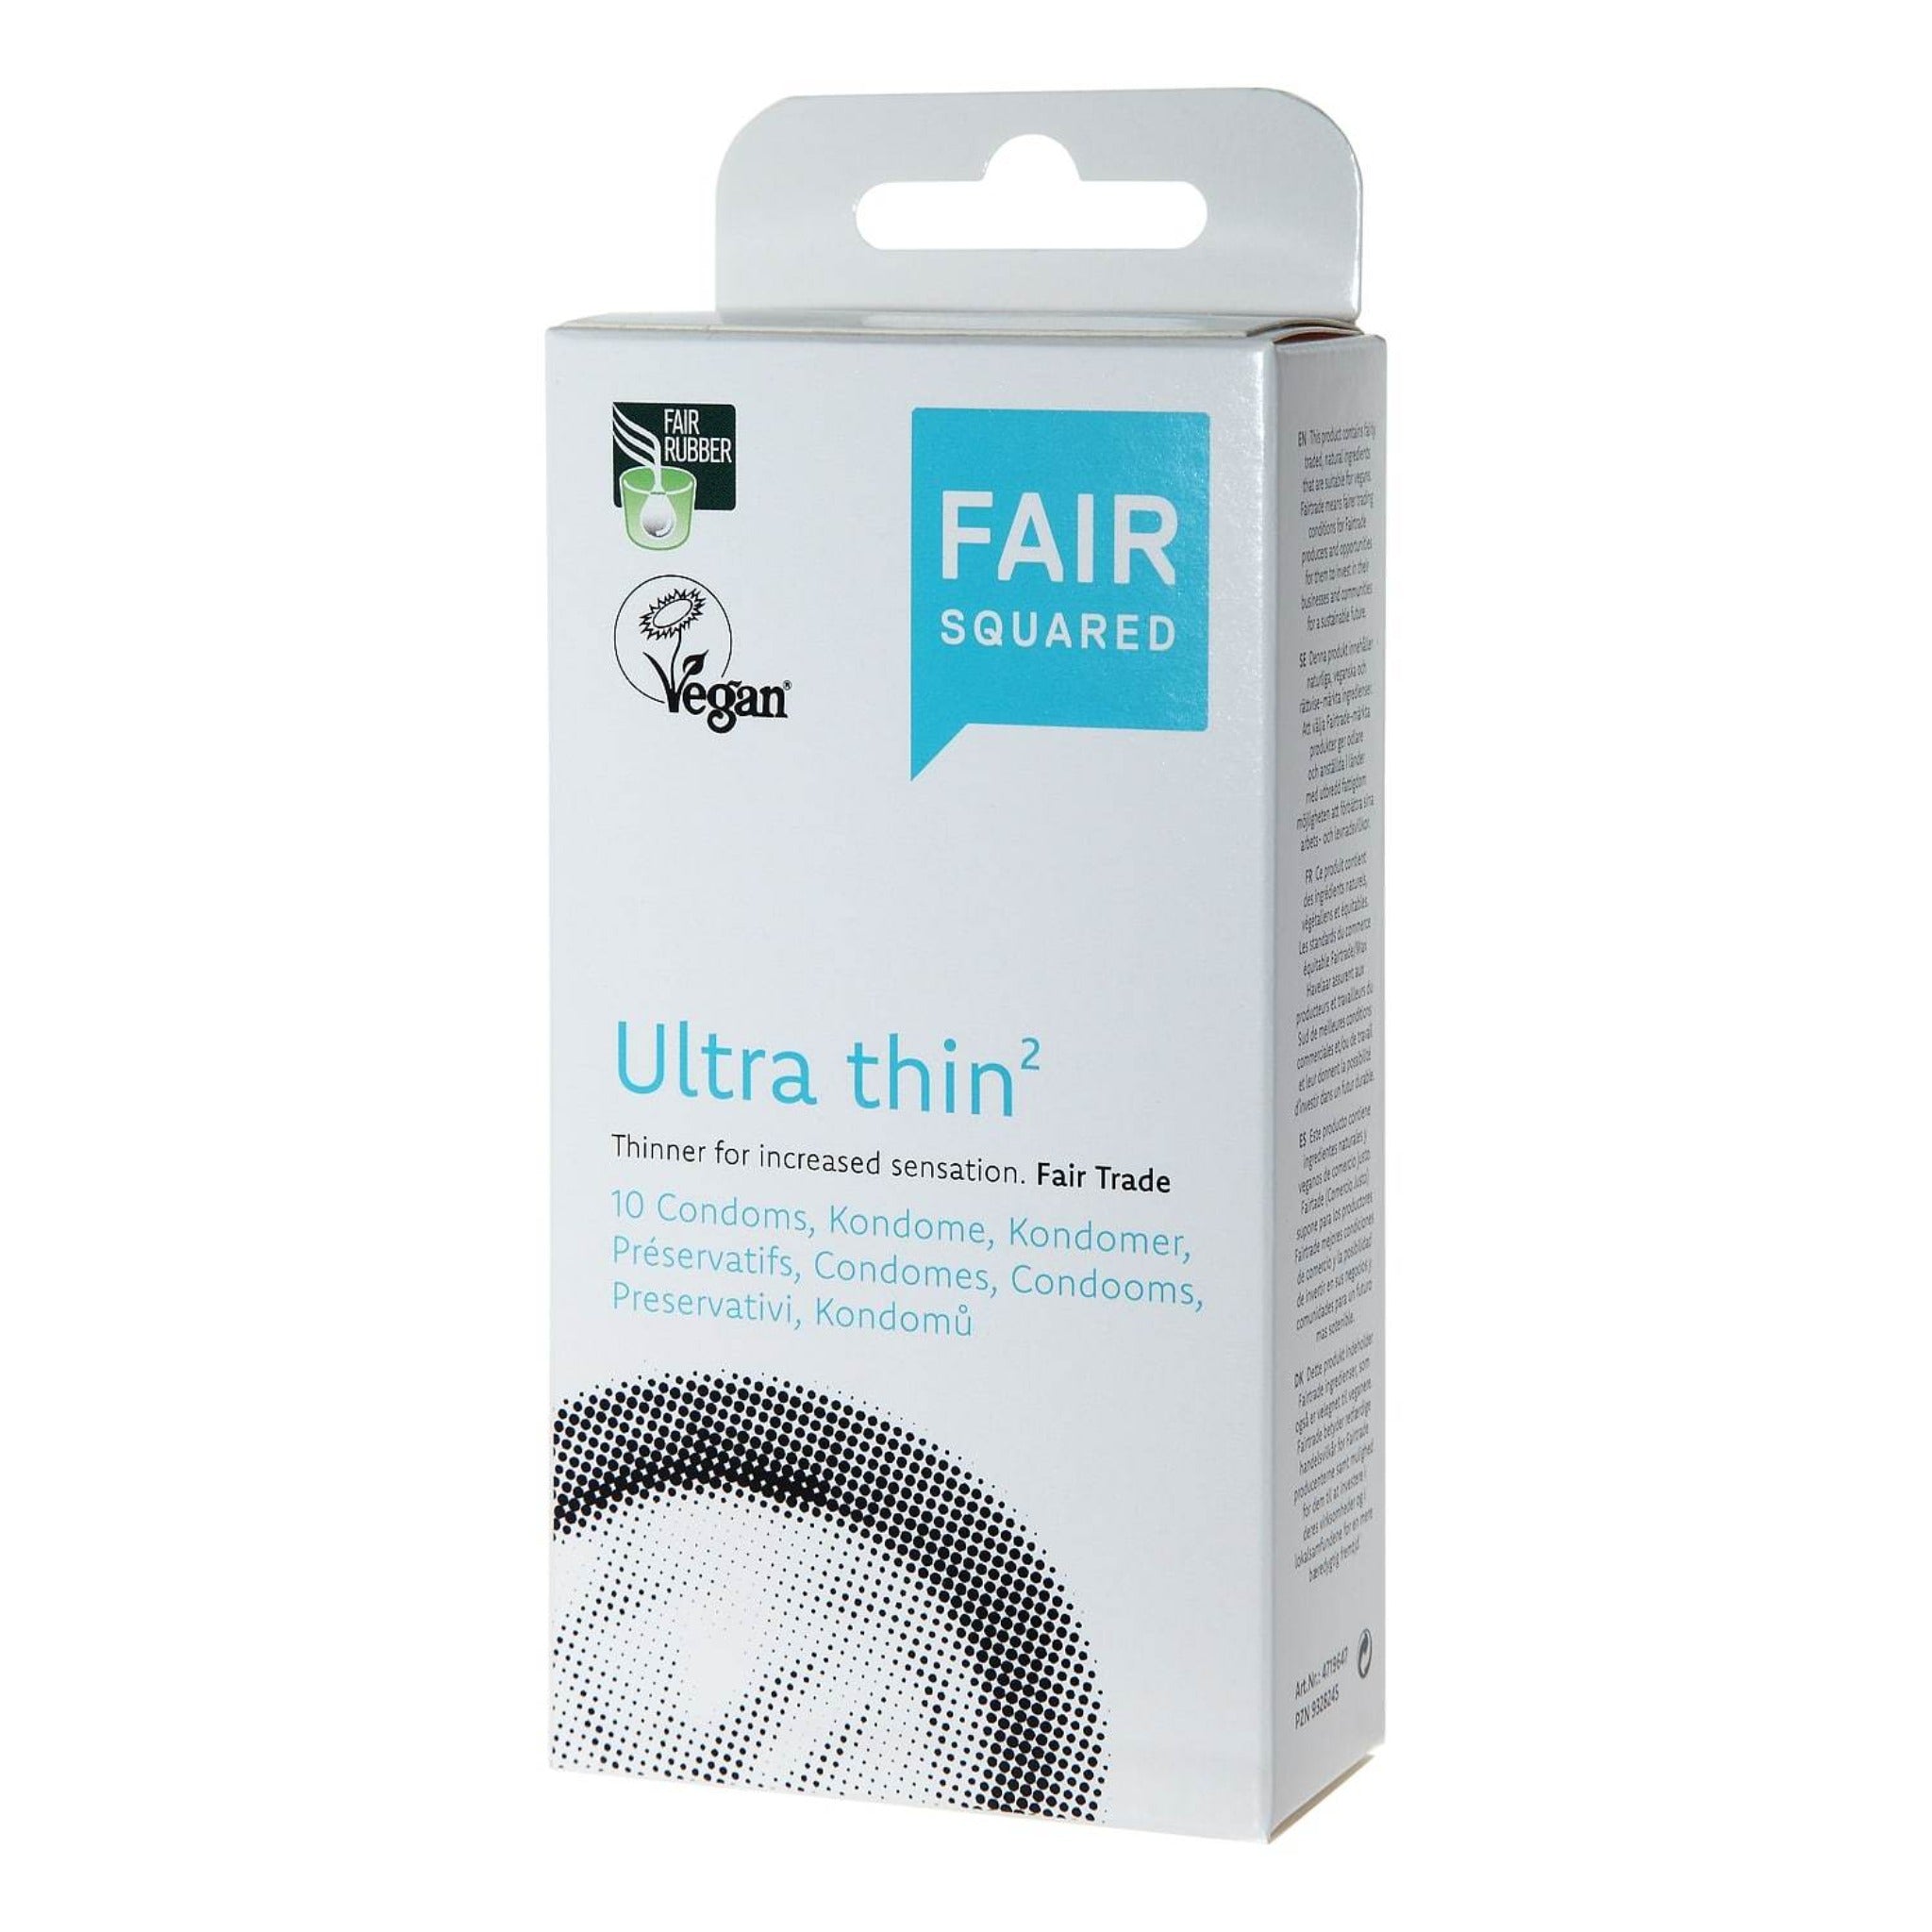 Fair Squared Ultra Thin Condoms Package